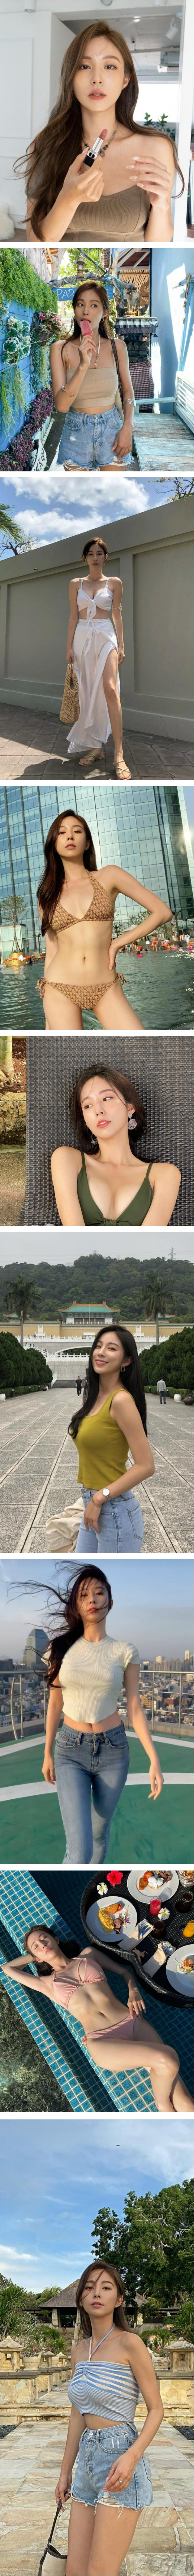 연예인 몸매 대역 슈퍼 모델 김보라